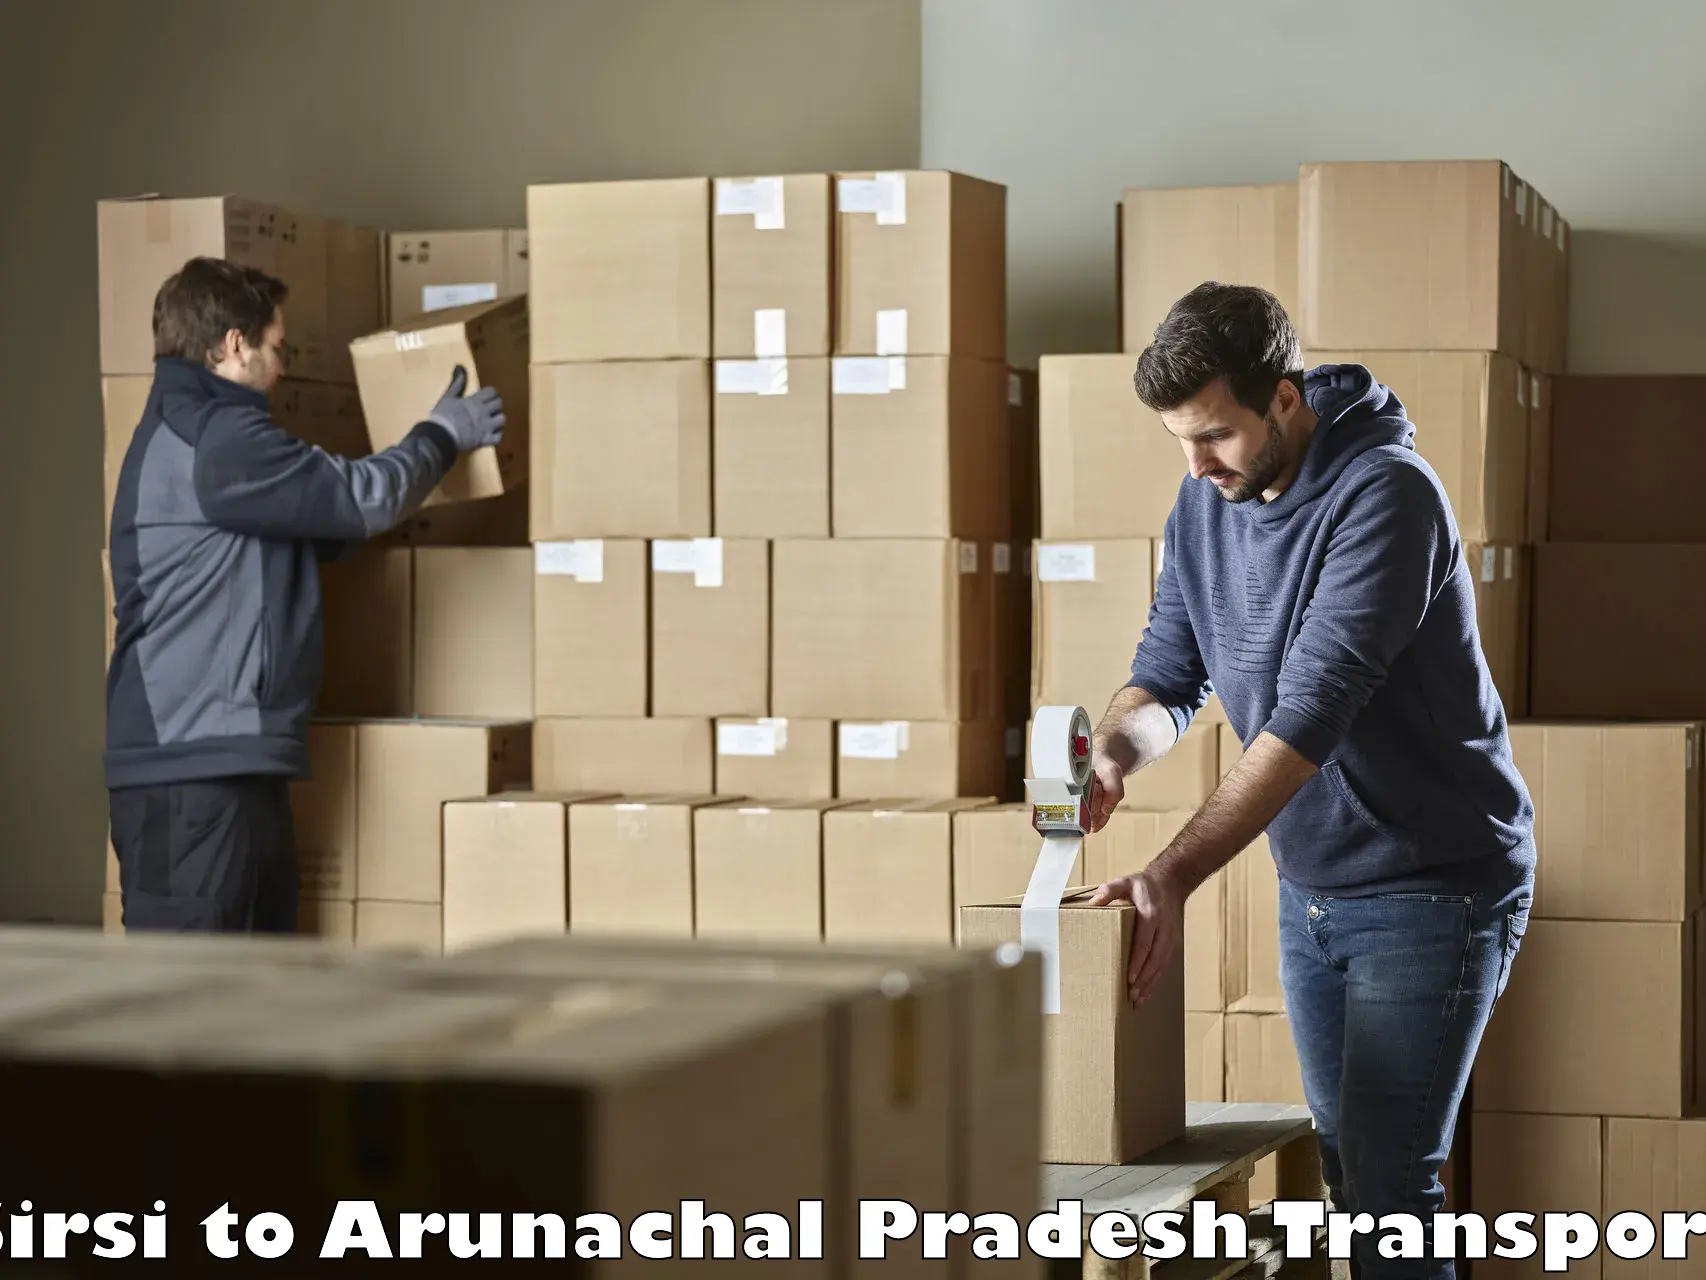 Road transport online services Sirsi to Arunachal Pradesh